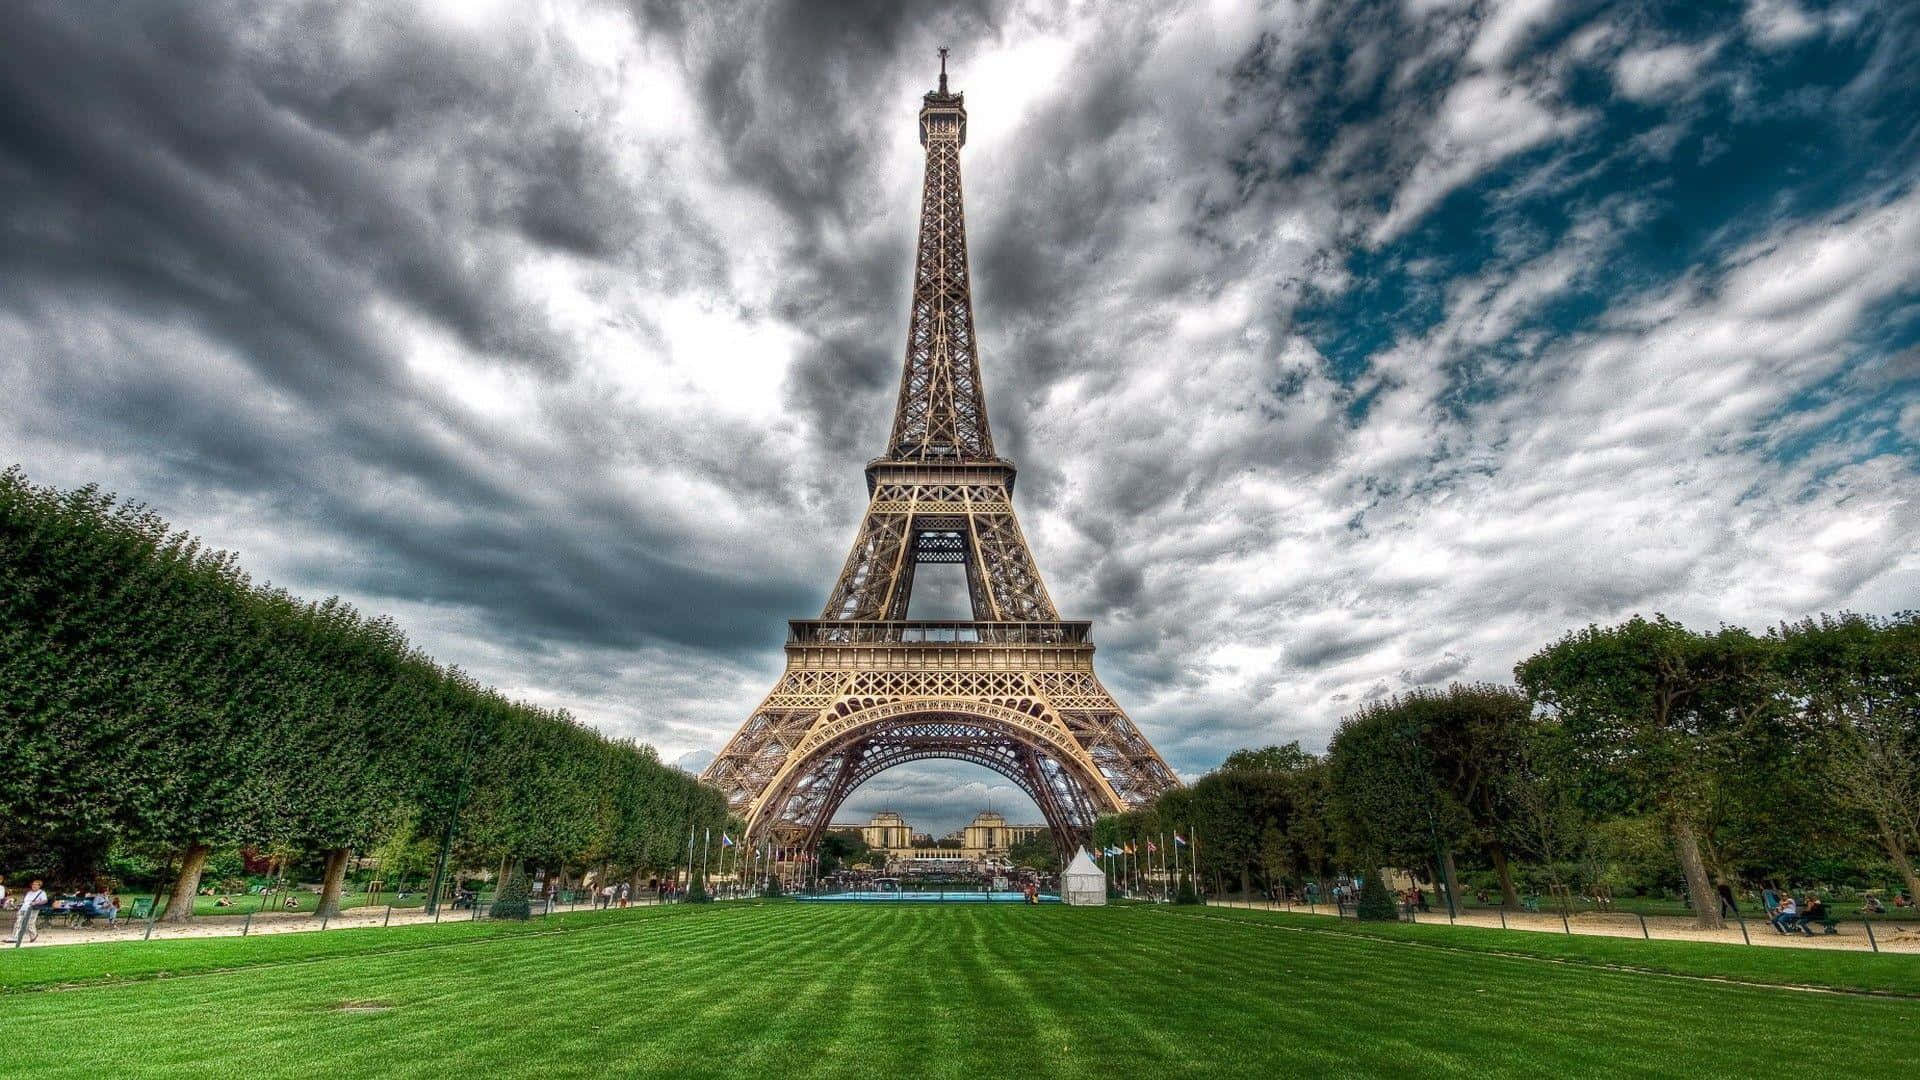 Bådeturister Och Lokalbefolkning Besöker Den Ikoniska Eiffeltornet I Paris, Frankrike.